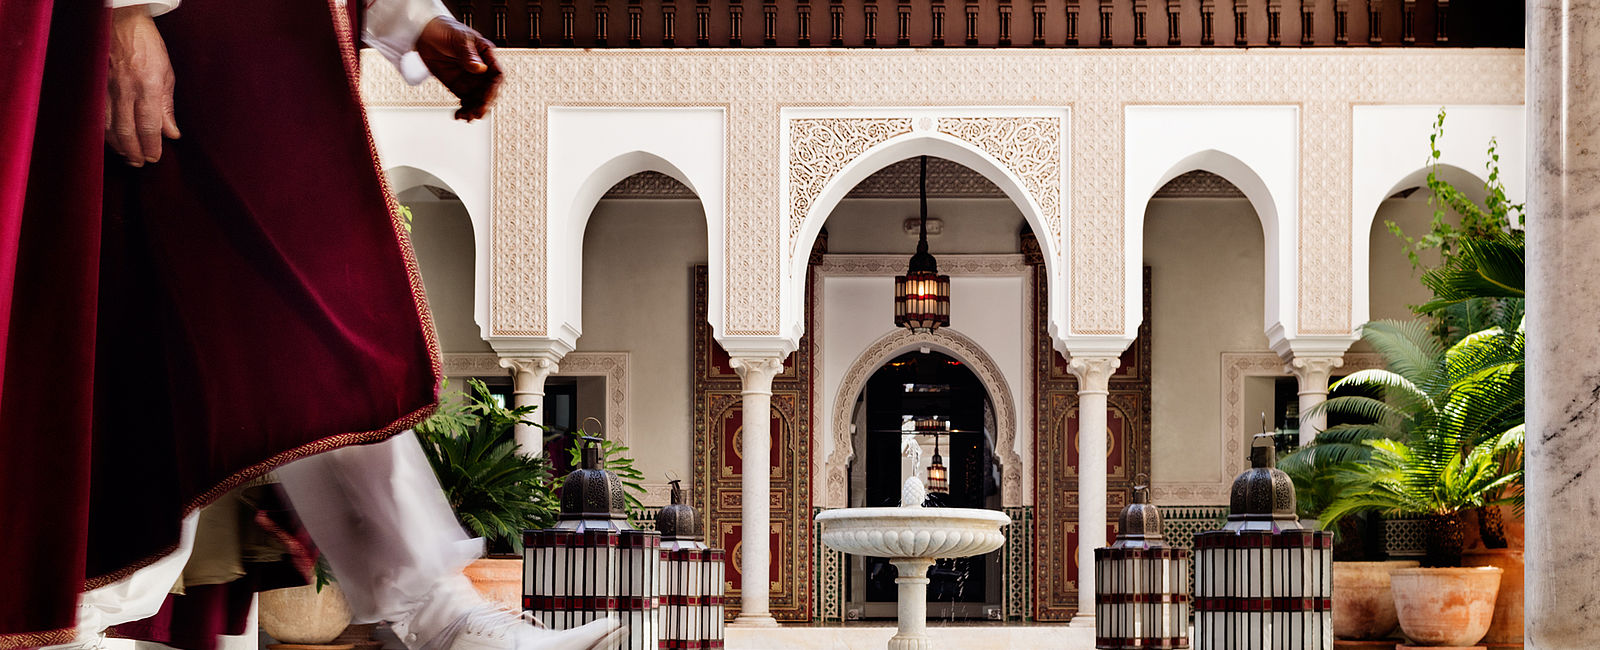 HOTEL ANGEBOTE
 La Mamounia Marrakech: The Very Marocco 
